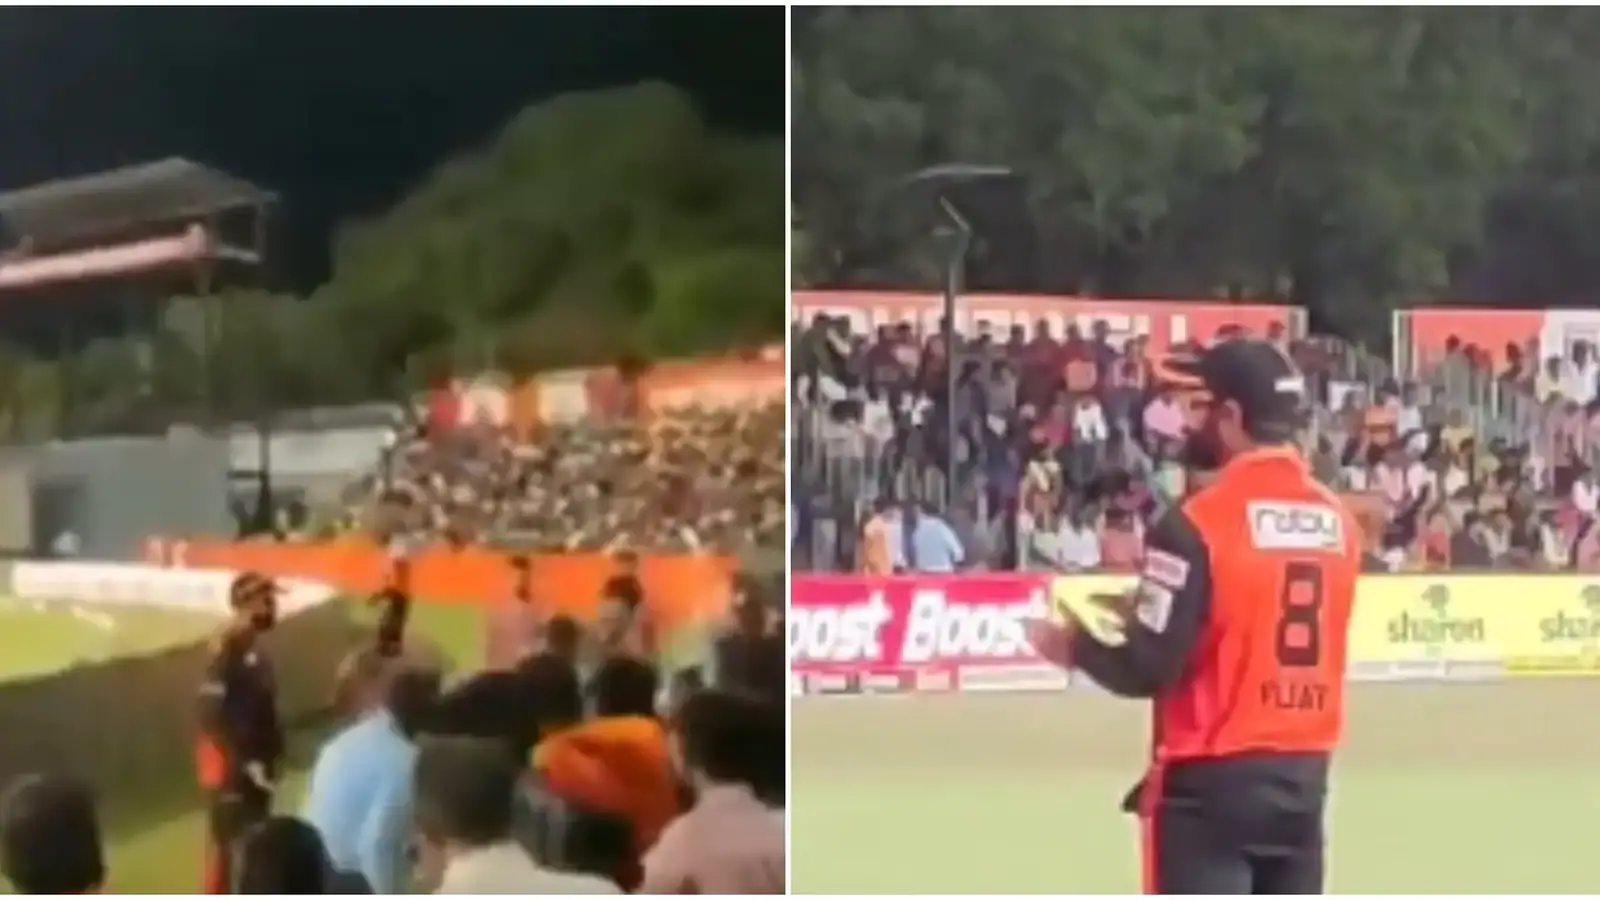  देखें: टीएनपीएल के दौरान 'डीके, डीके' के नारे लगाने वाले प्रशंसकों के साथ मुरली विजय की बदसूरत मुठभेड़ |  क्रिकेट
